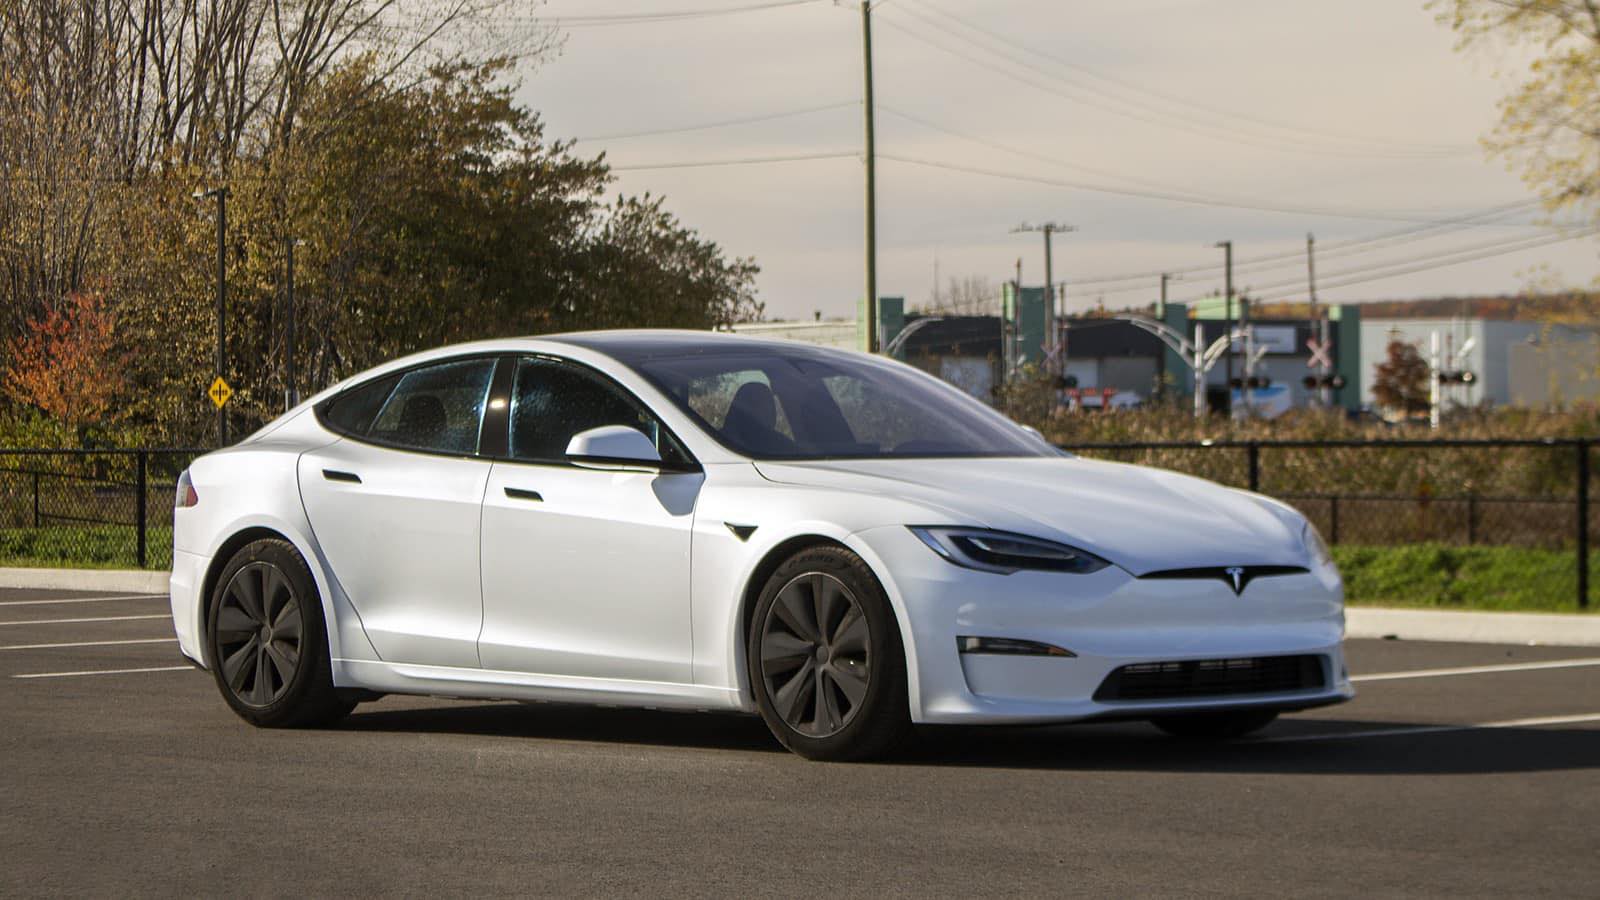 Tesla Model S Plaid выходит «за рамки пледа» с удивительной скоростью 217 миль в час